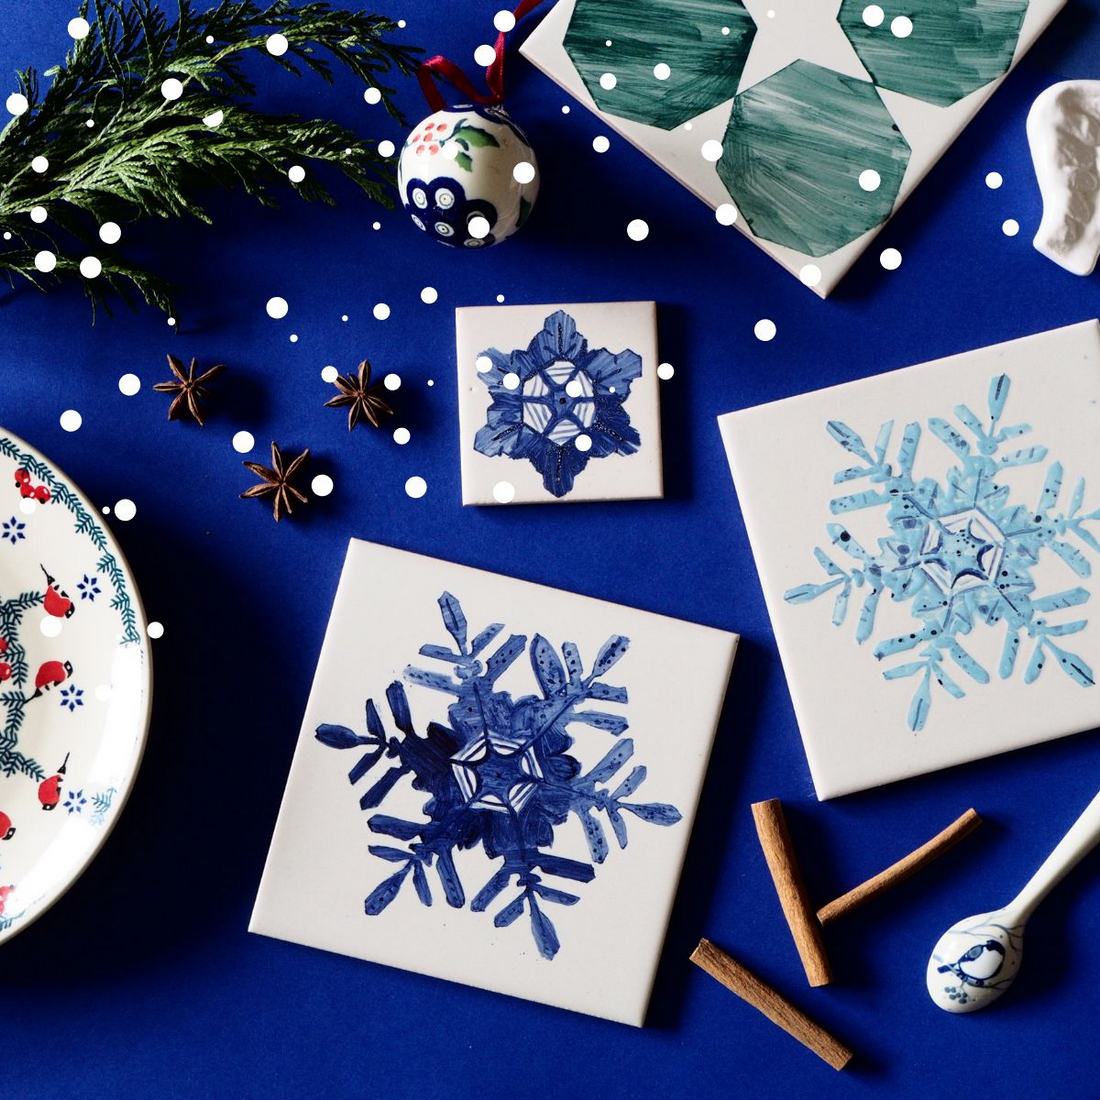 Płatki śniegu ręcznie malowane na kafelkach ceramicznych to świetny pomysł na prezent świąteczny